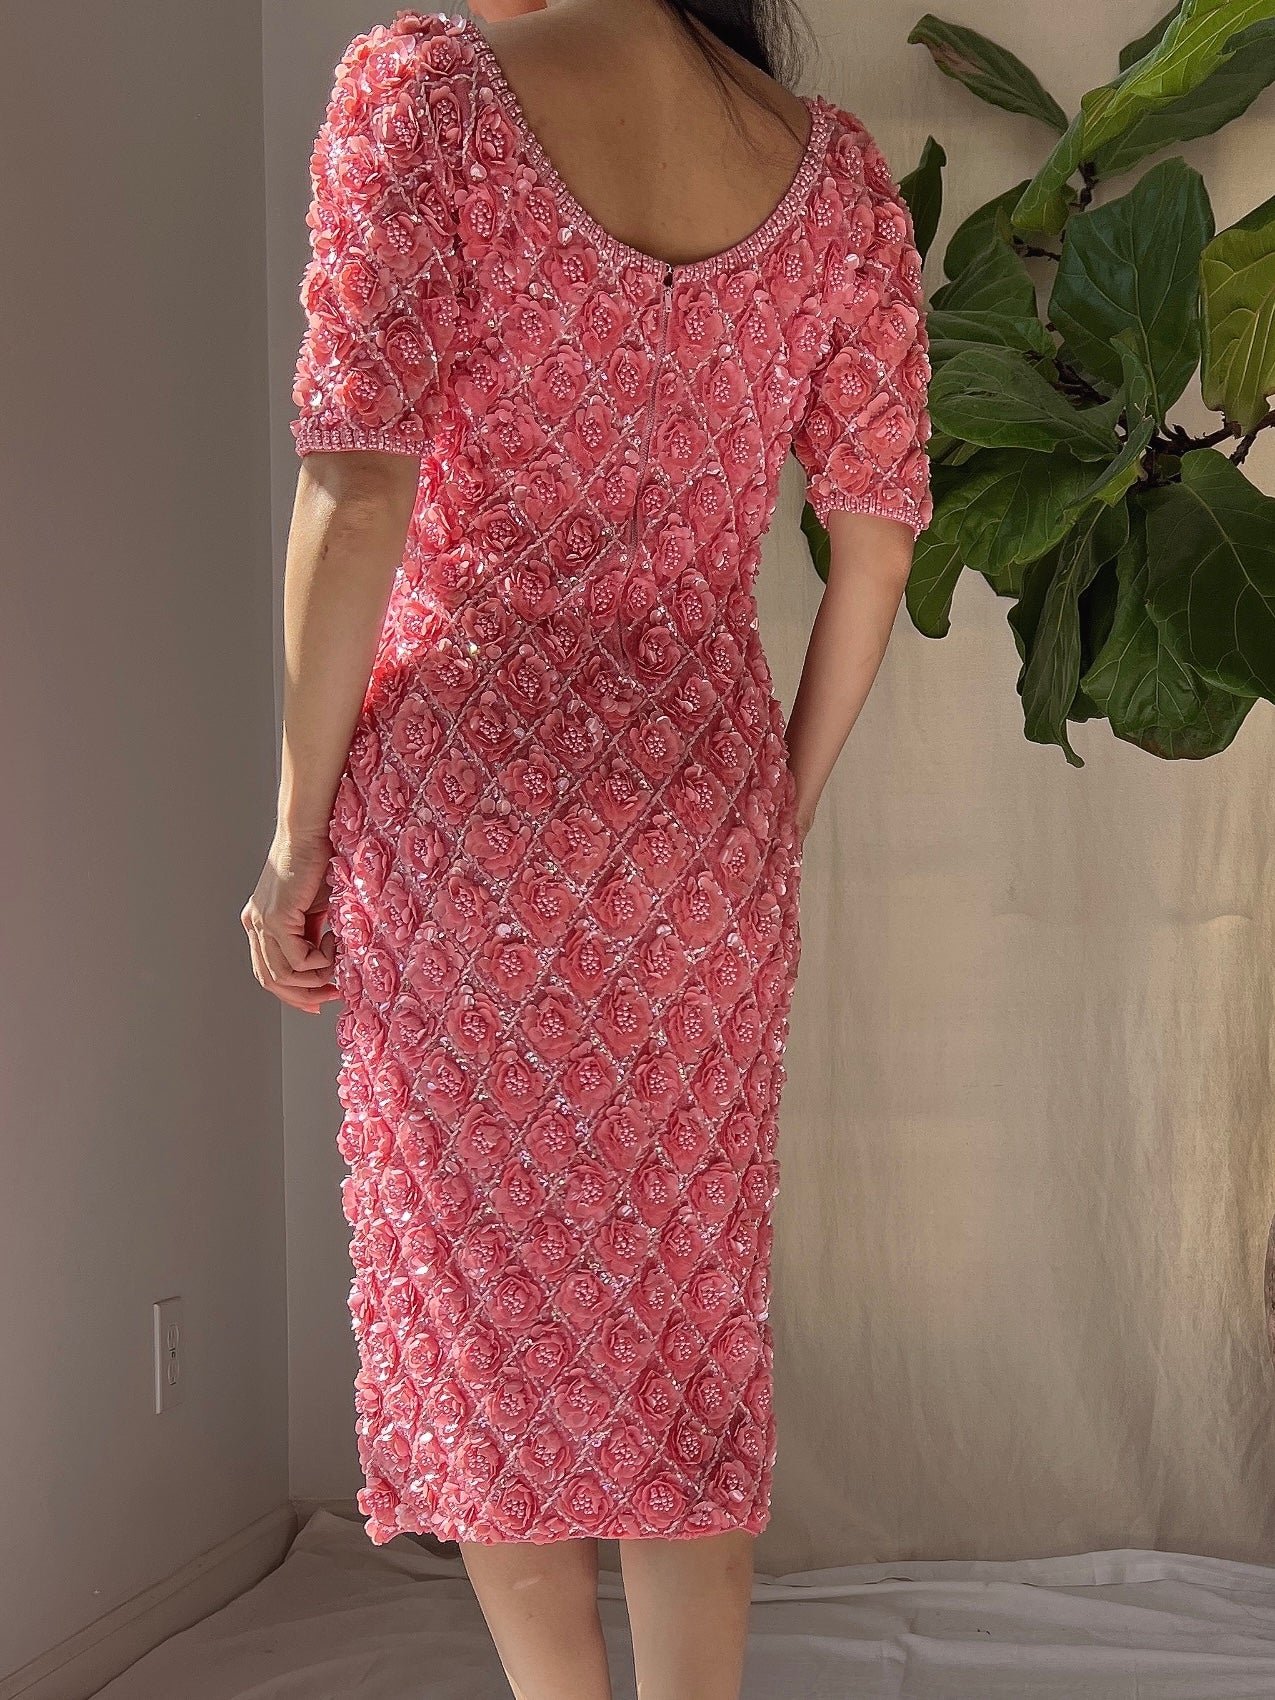 Rare 1960s Wool Hand-Beaded Dress - XS/S